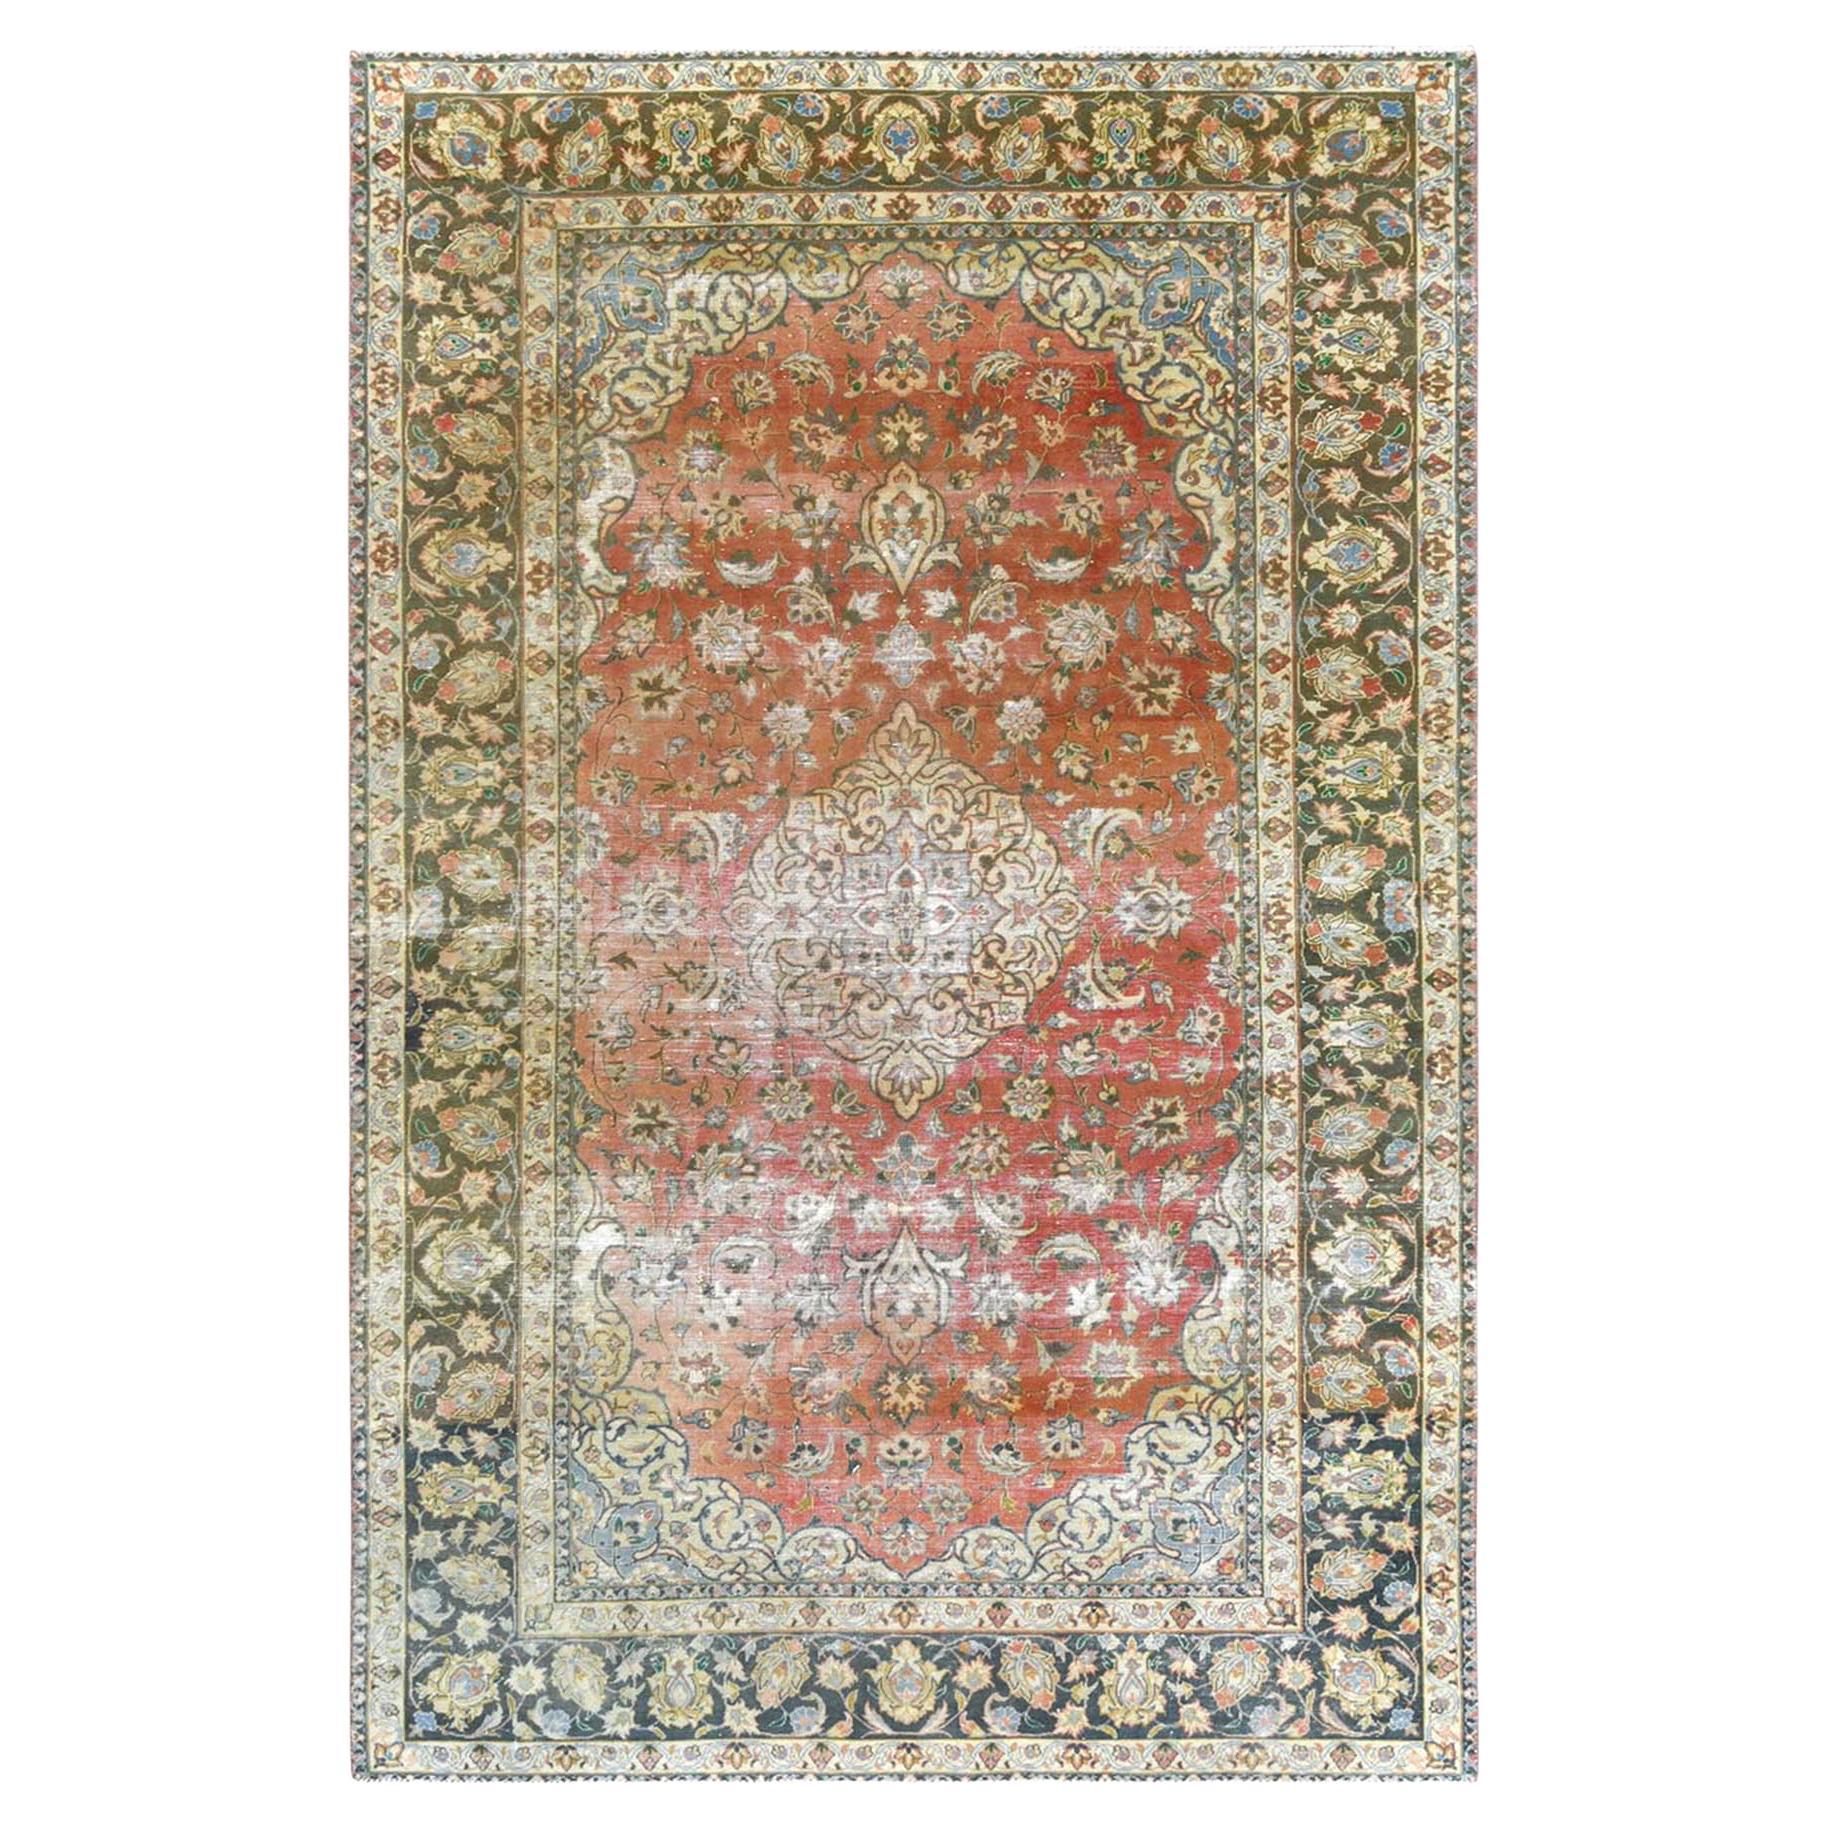 Handgeknüpfter persischer Kashan-Teppich im Vintage-Look, Farbe Apricot, aus Wolle